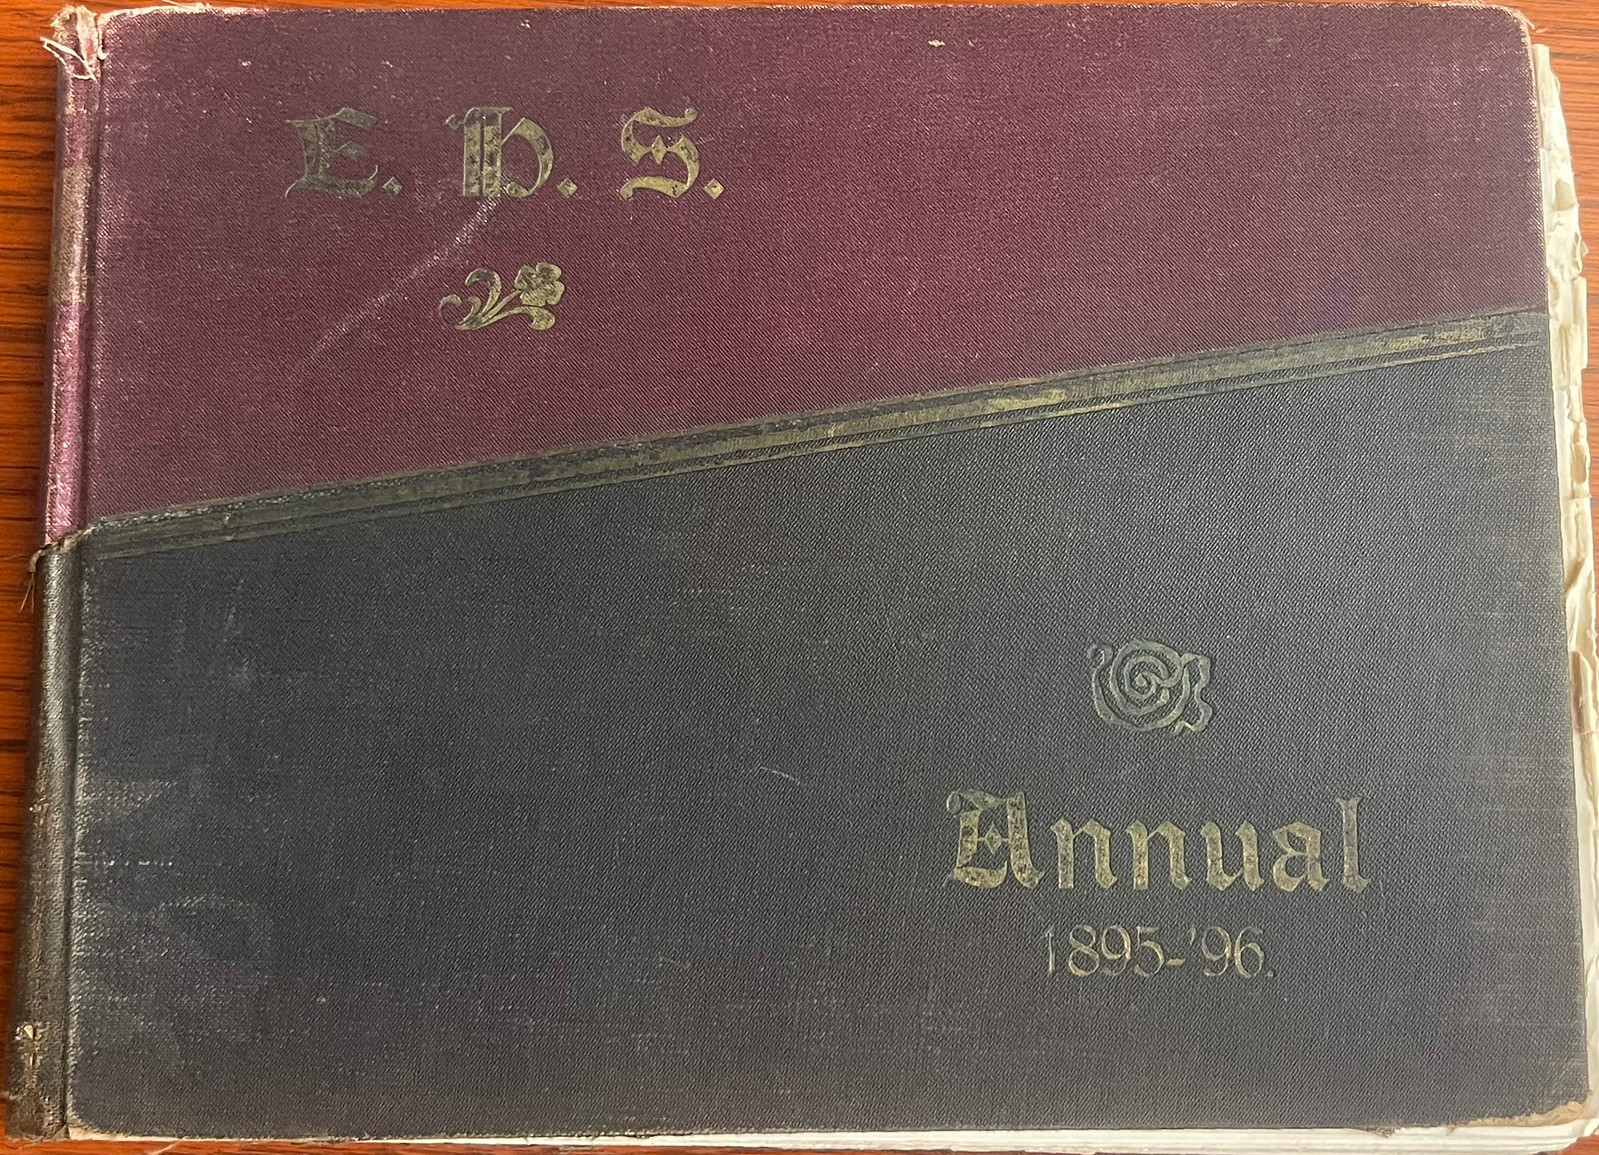 The E.H.S Annual, 1895-96